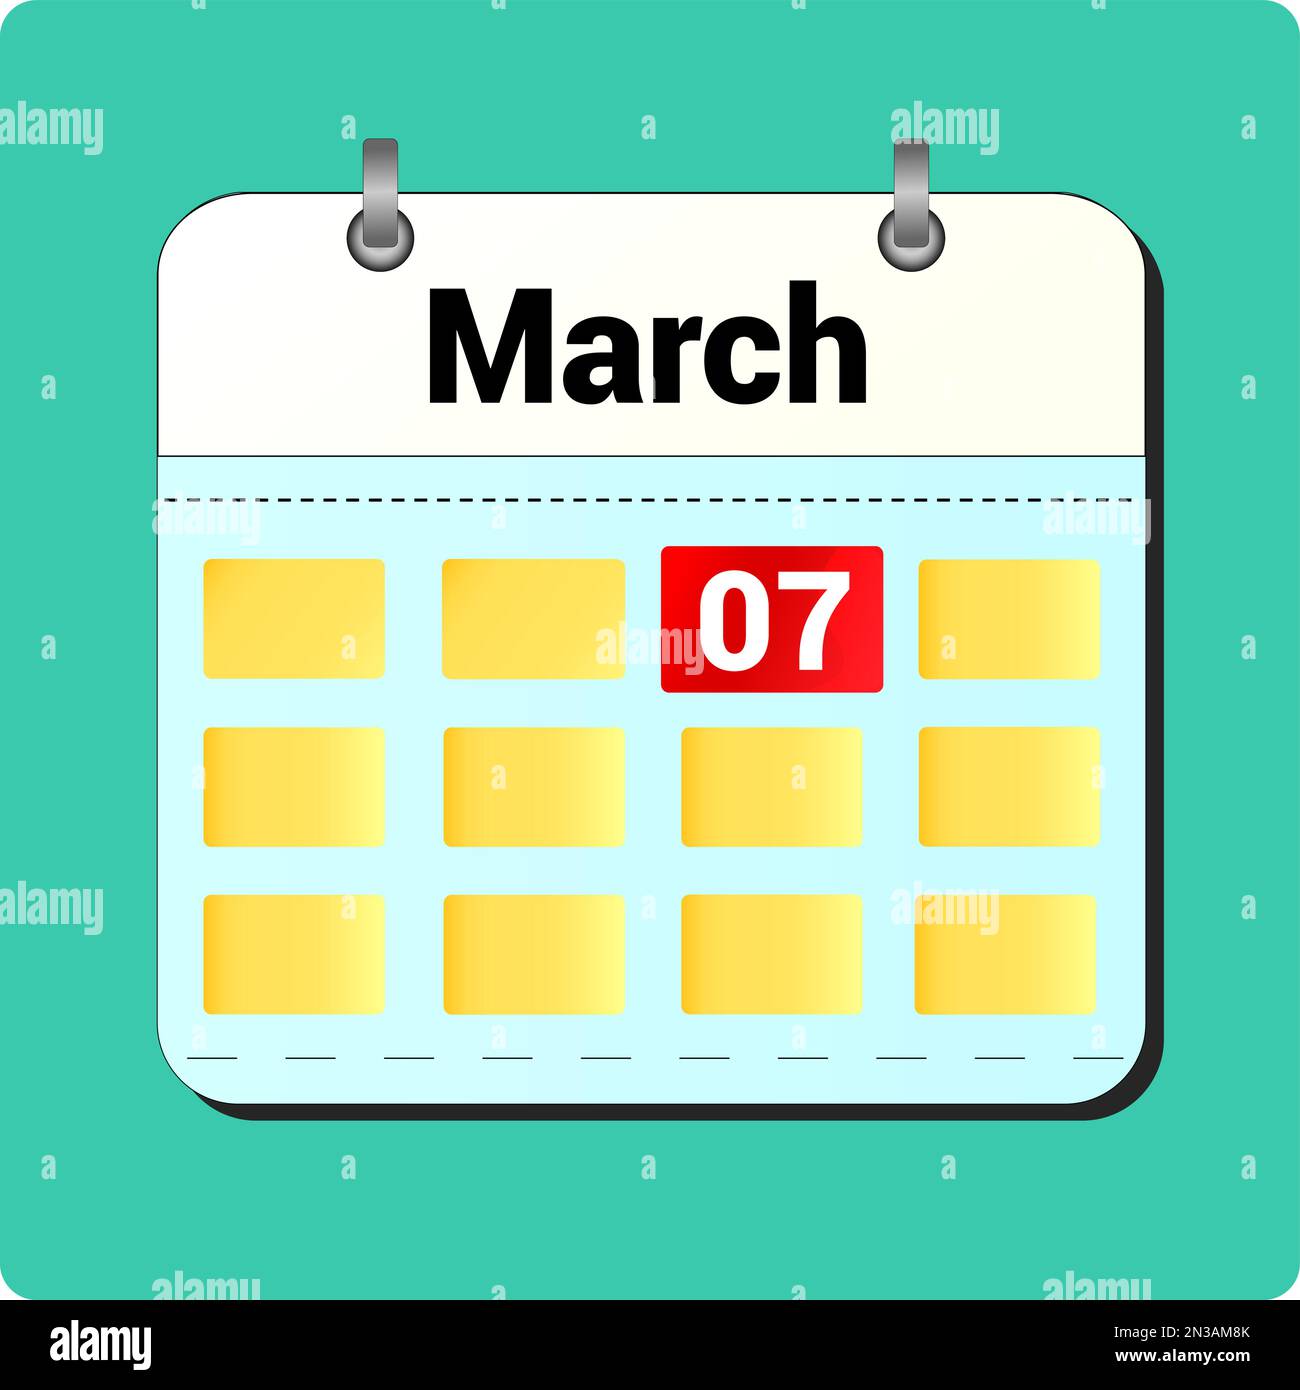 Dessin vectoriel de calendrier, date 07 mars sur la page Illustration de Vecteur